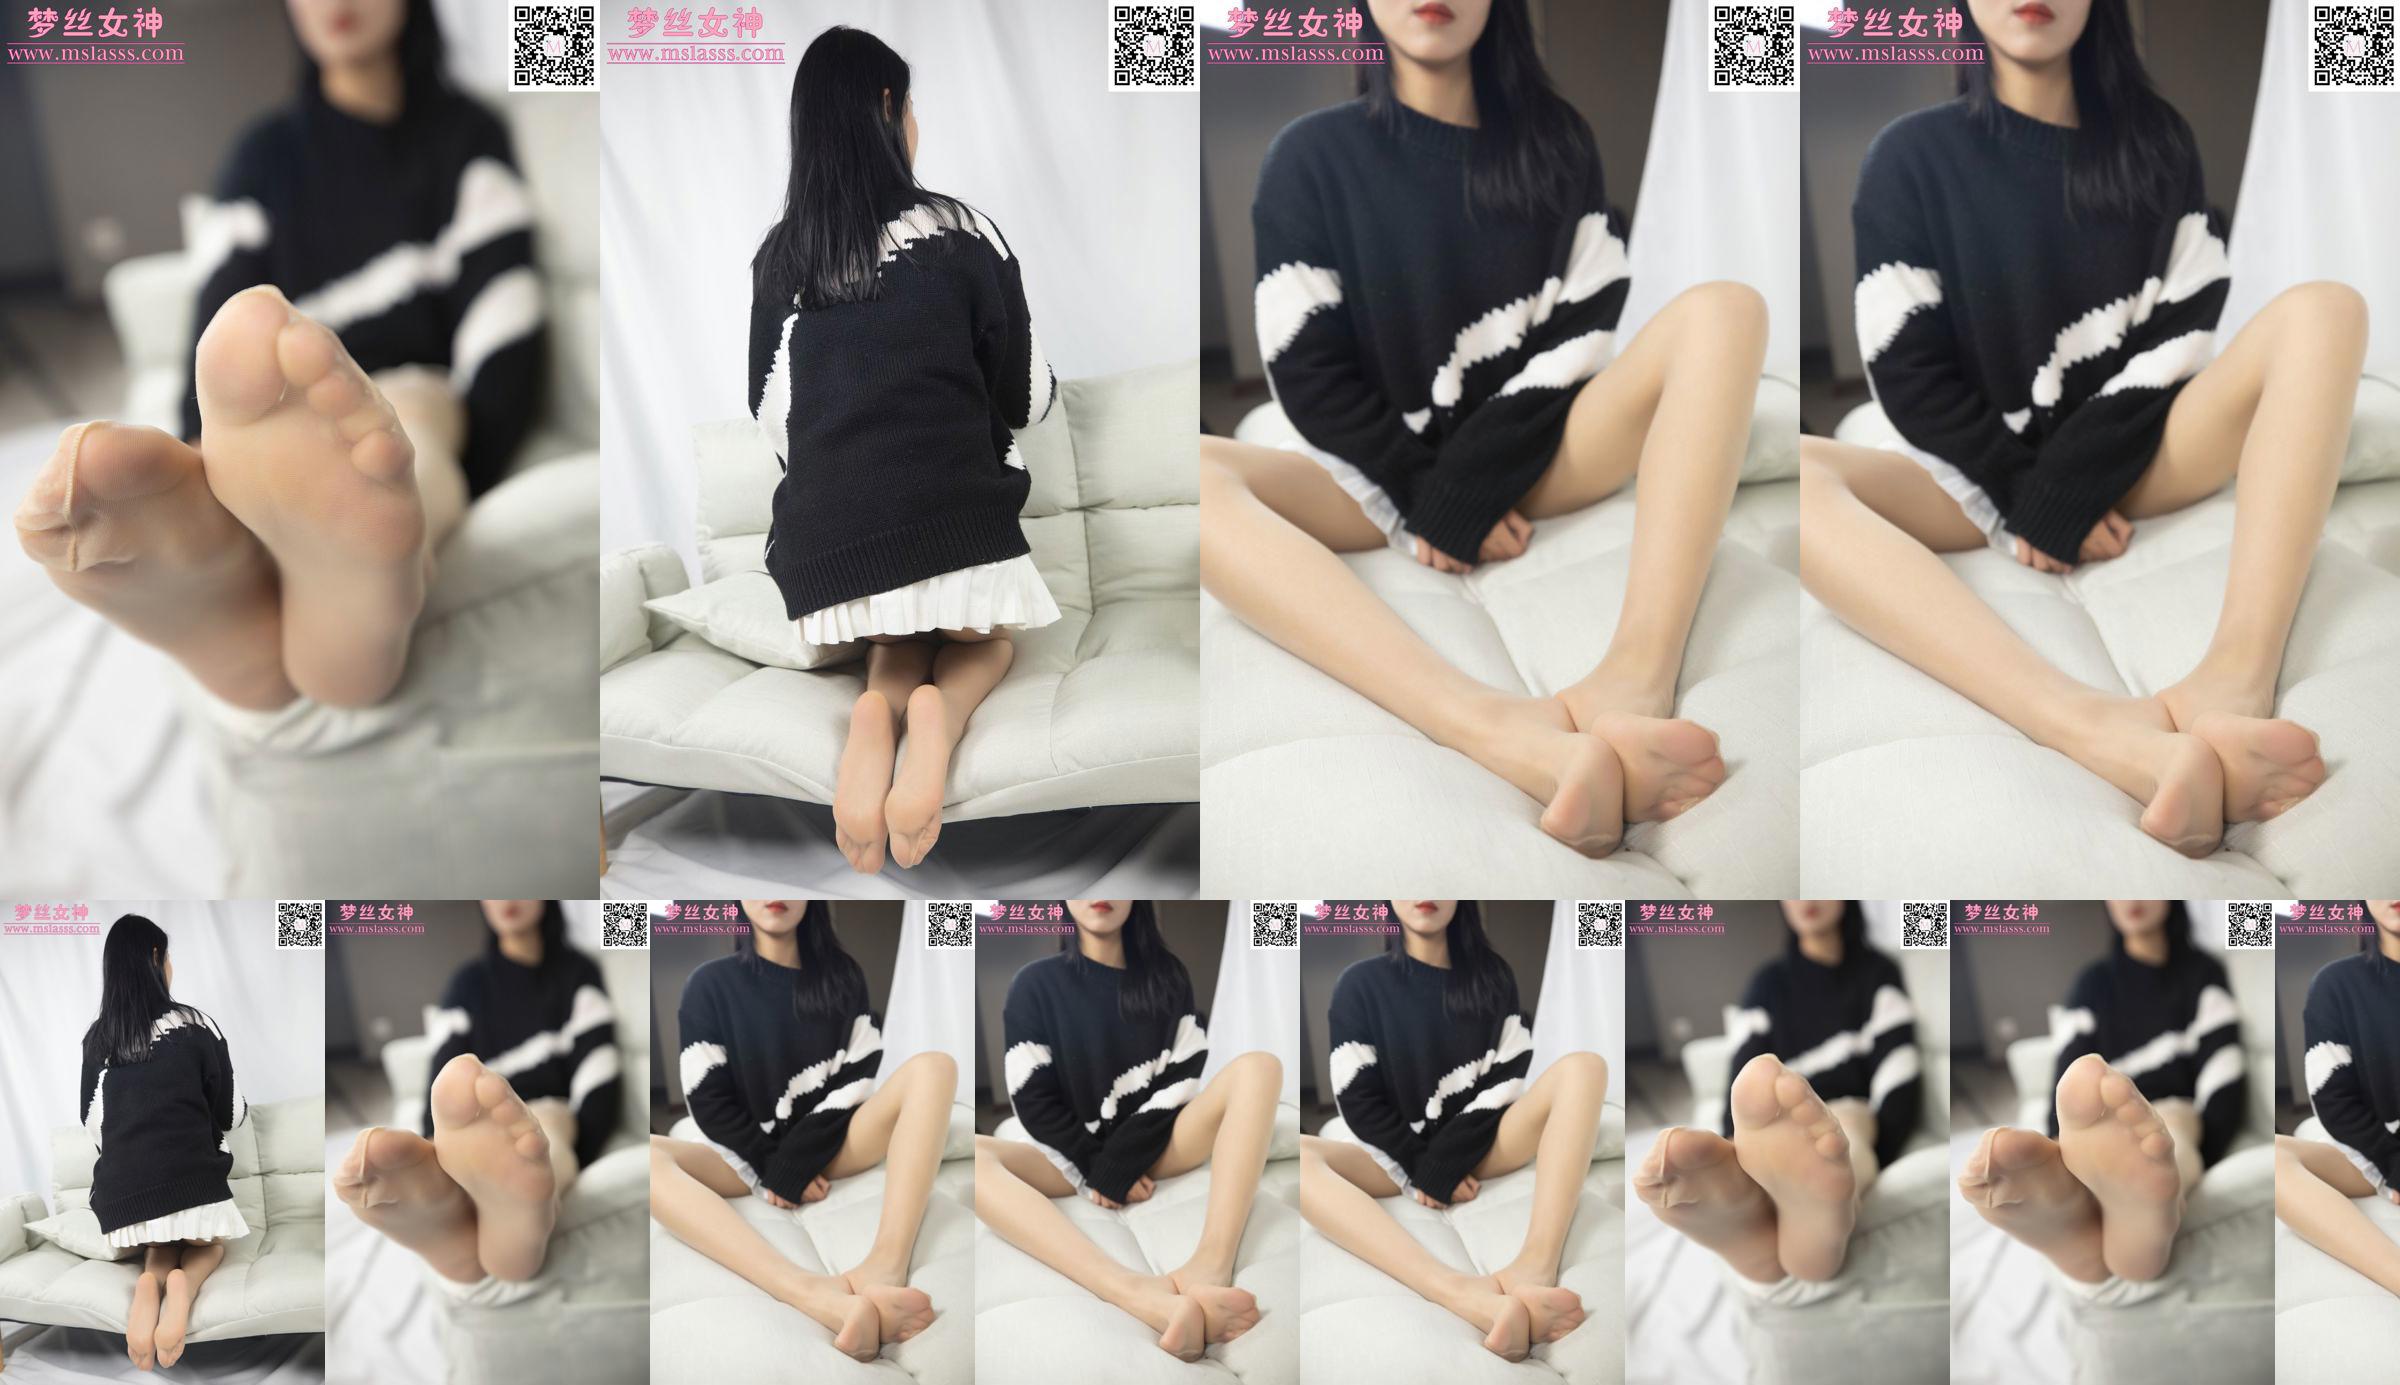 [Göttin der Träume MSLASS] Xiaomus Pullover kann ihre langen Beine nicht aufhalten No.96925a Seite 10